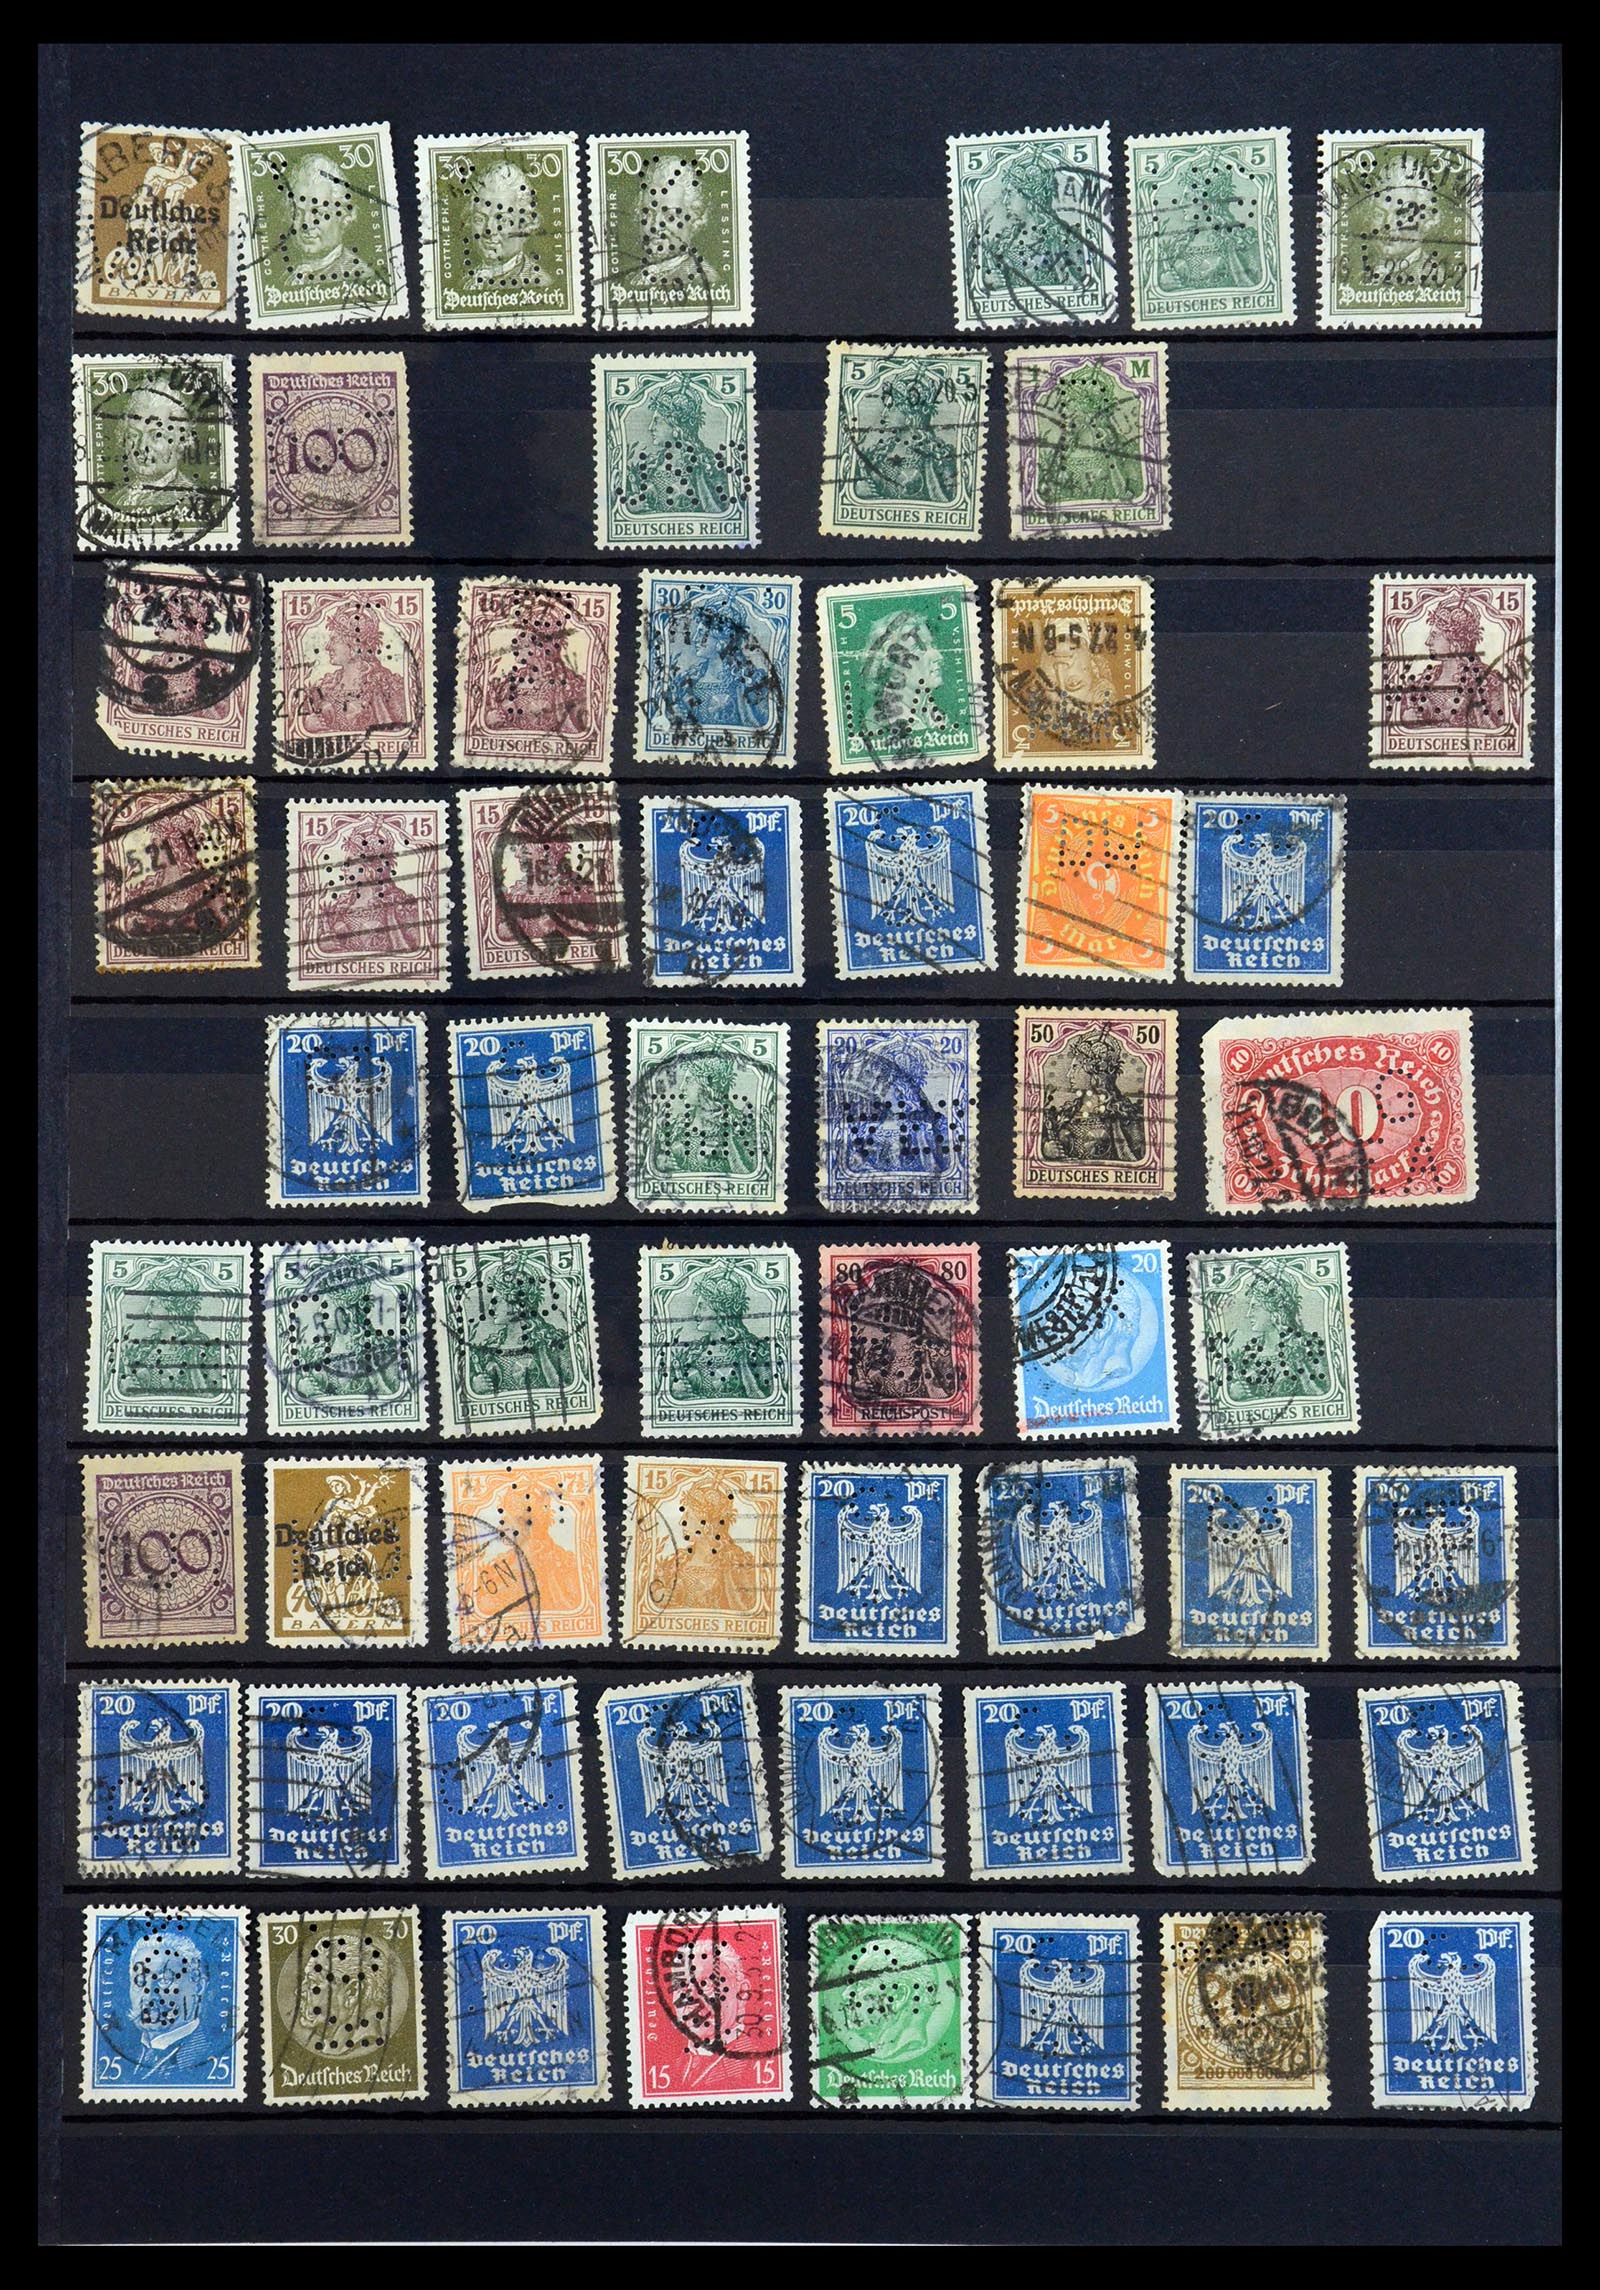 35183 040 - Stamp Collection 35183 German Reich perfins 1880-1945.